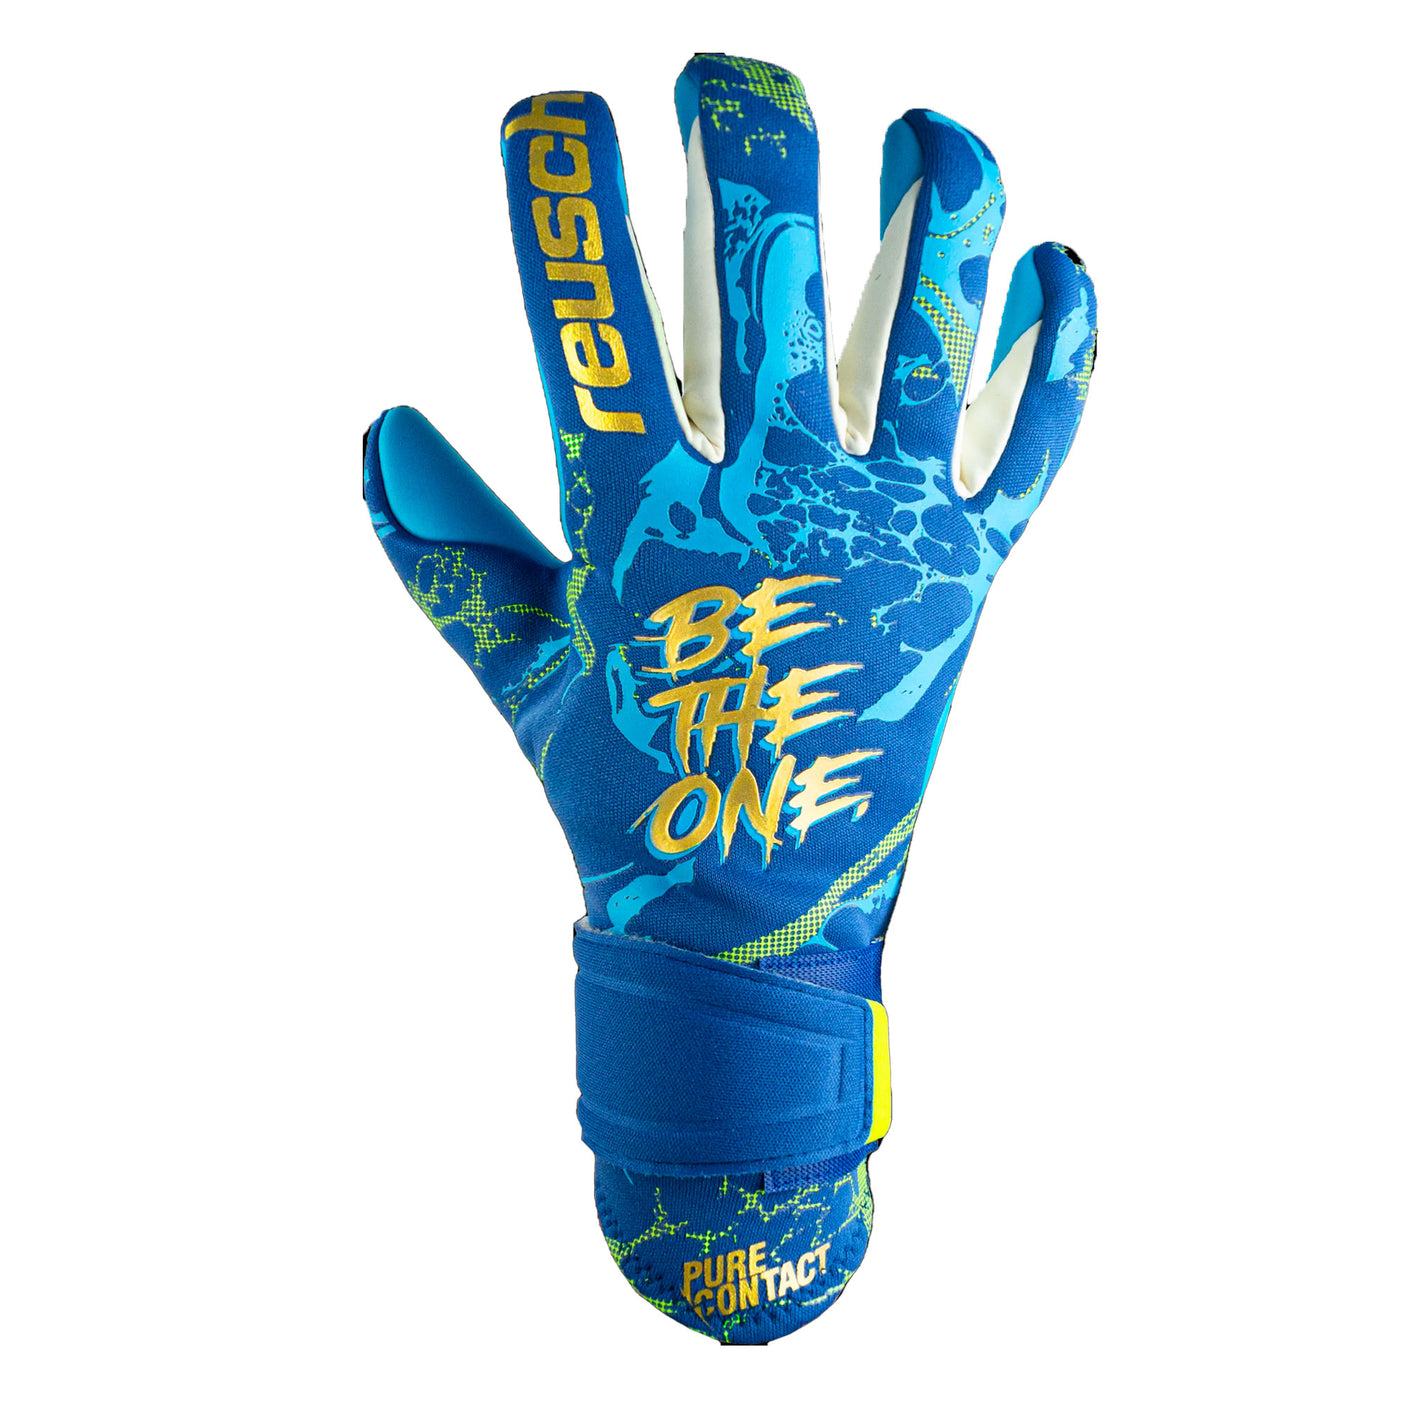 Reusch Men's Pure Contact Aqua Goalkeeper Gloves Blue Front